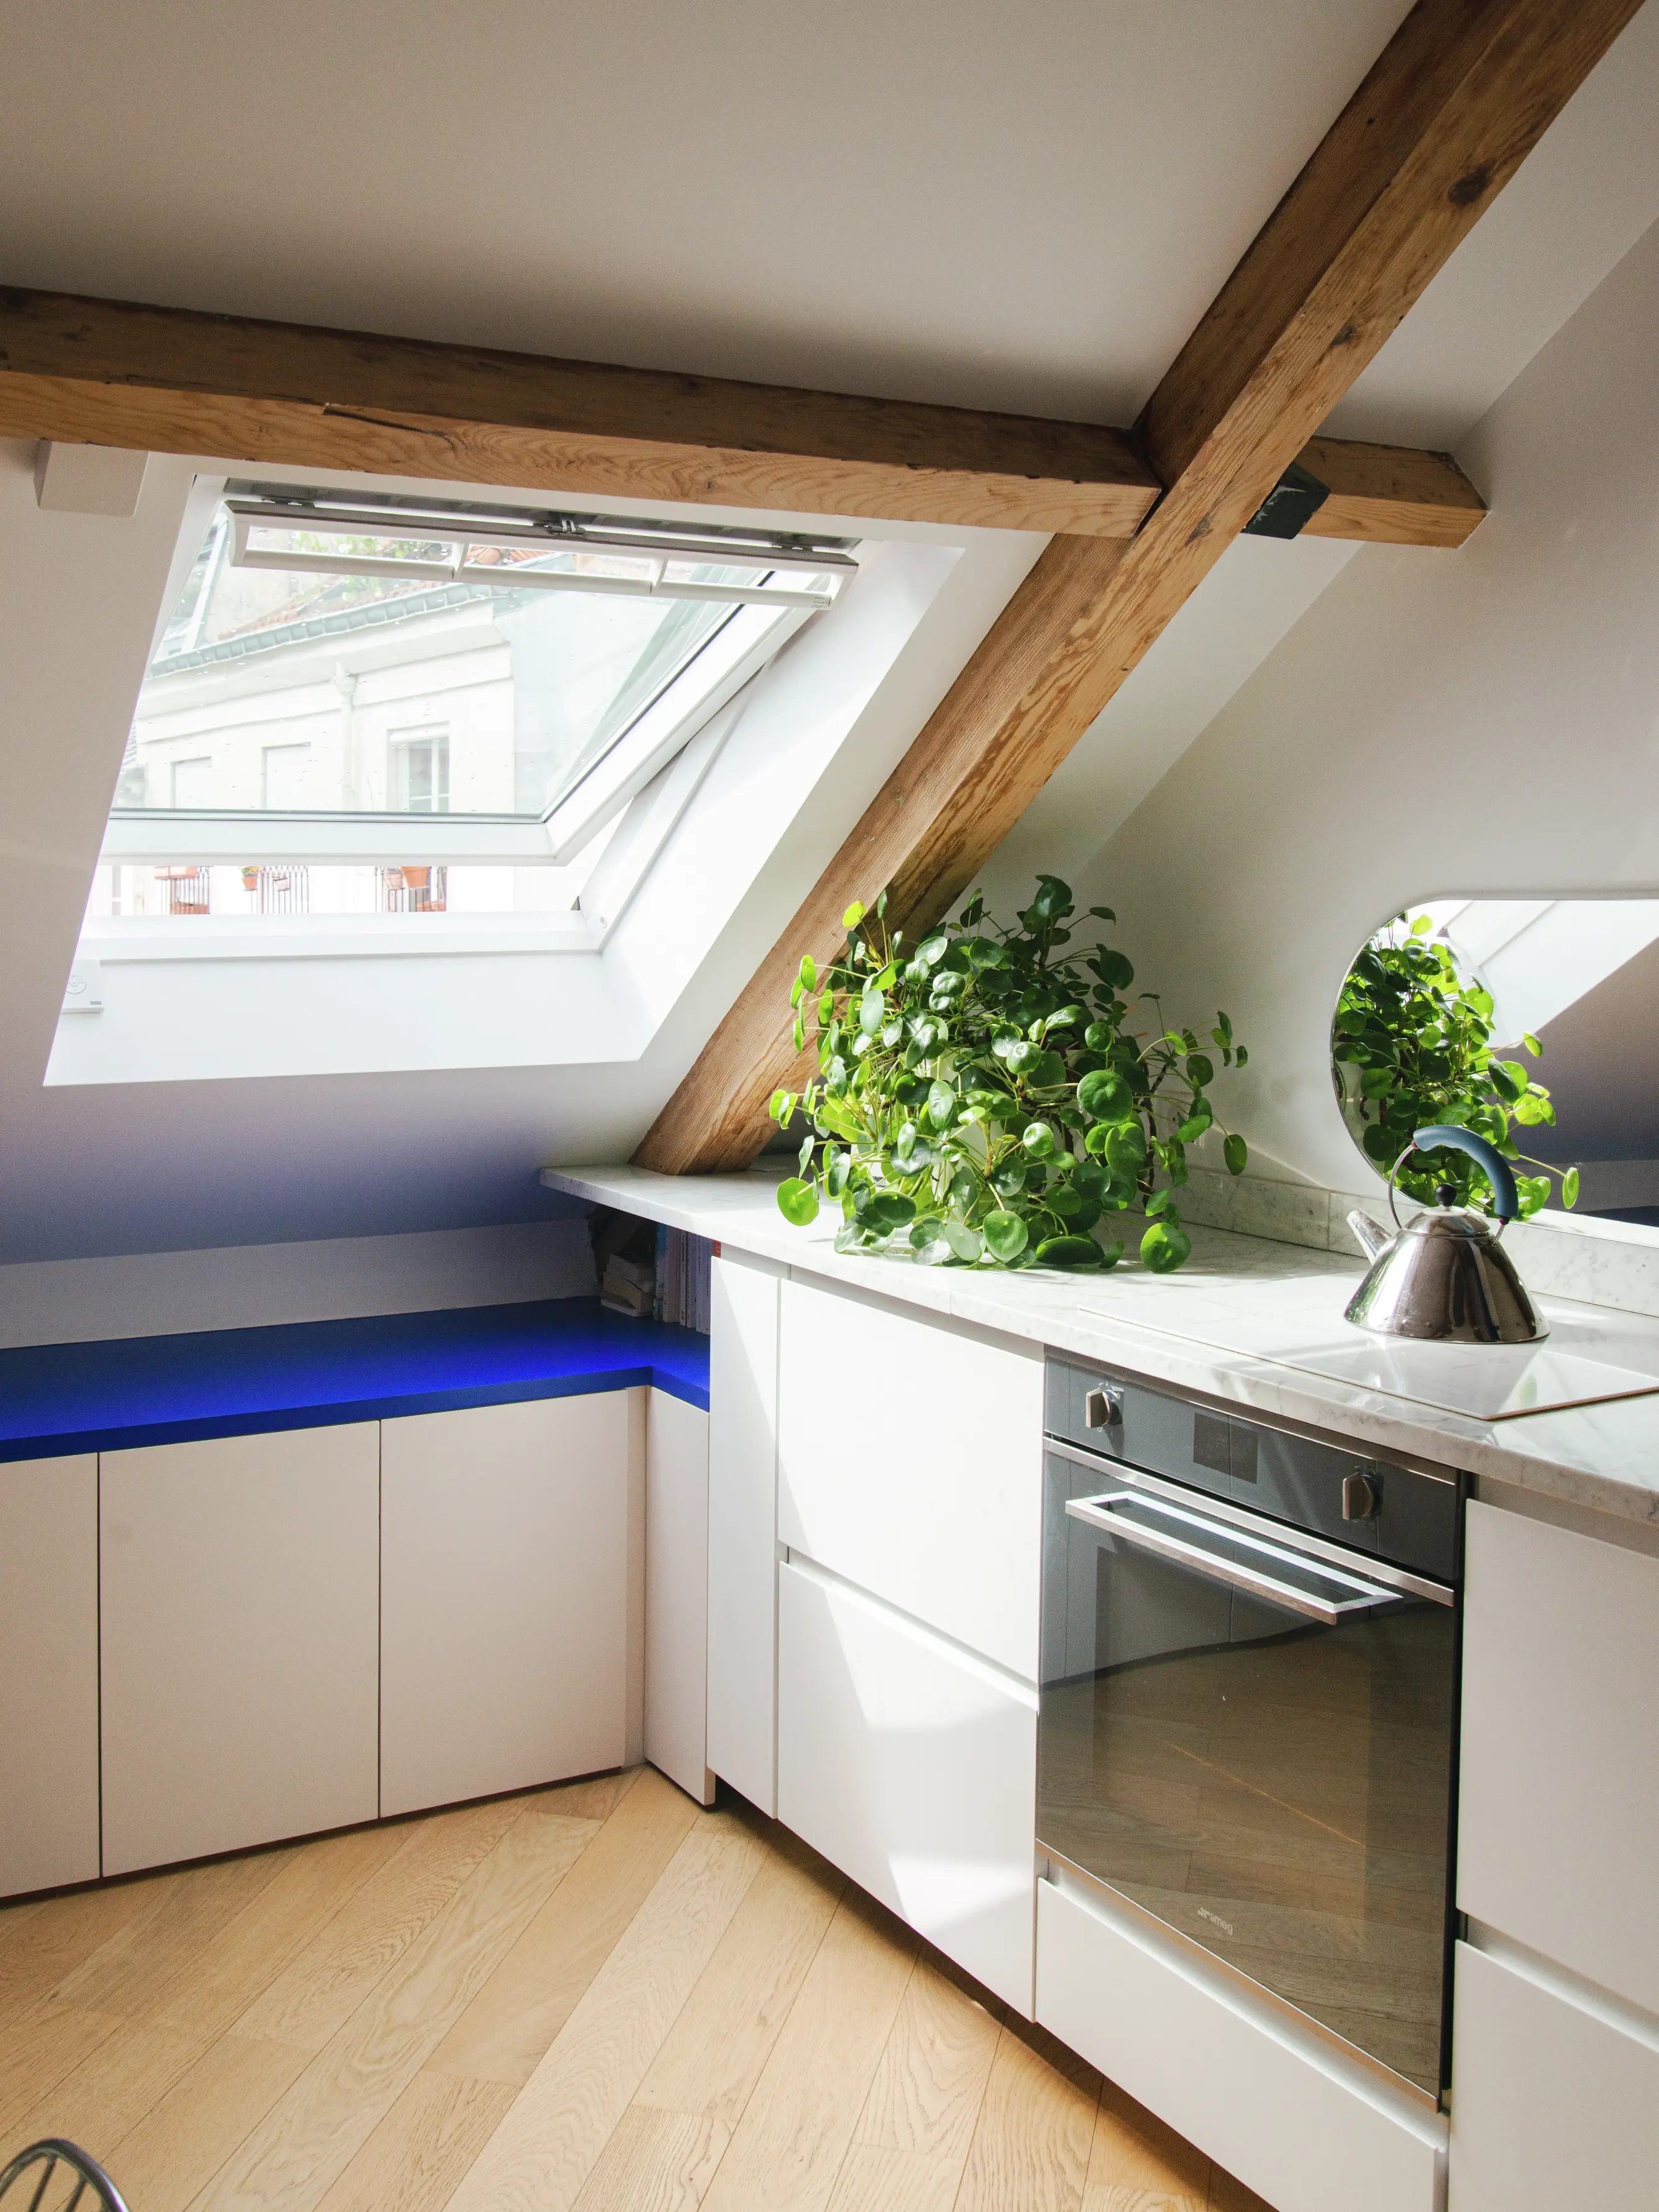 Cuisine moderne sous les combles avec des poutres en bois apparentes, des meubles blancs, un éclairage d'ambiance bleu et une fenêtre de toit apportant de la lumière naturelle.